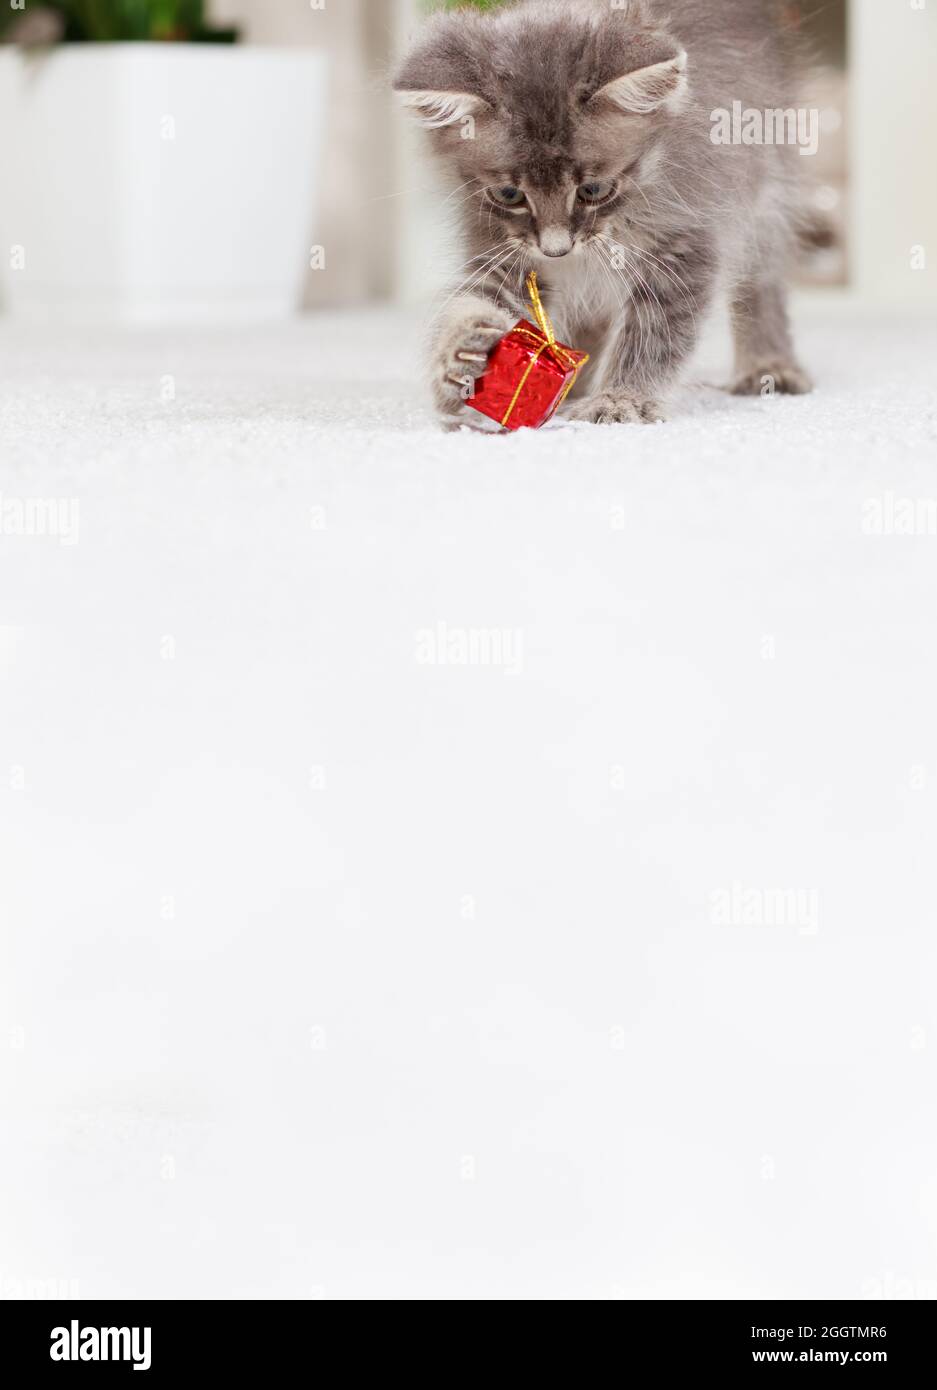 Vertikales Banner mit einer Katze mit einem Platz für Ihren Text. Ein flauschiges graues Kätzchen spielt mit einer Geschenkbox. Spielzeug und Waren für Tiere, Tierhandlung. Stockfoto